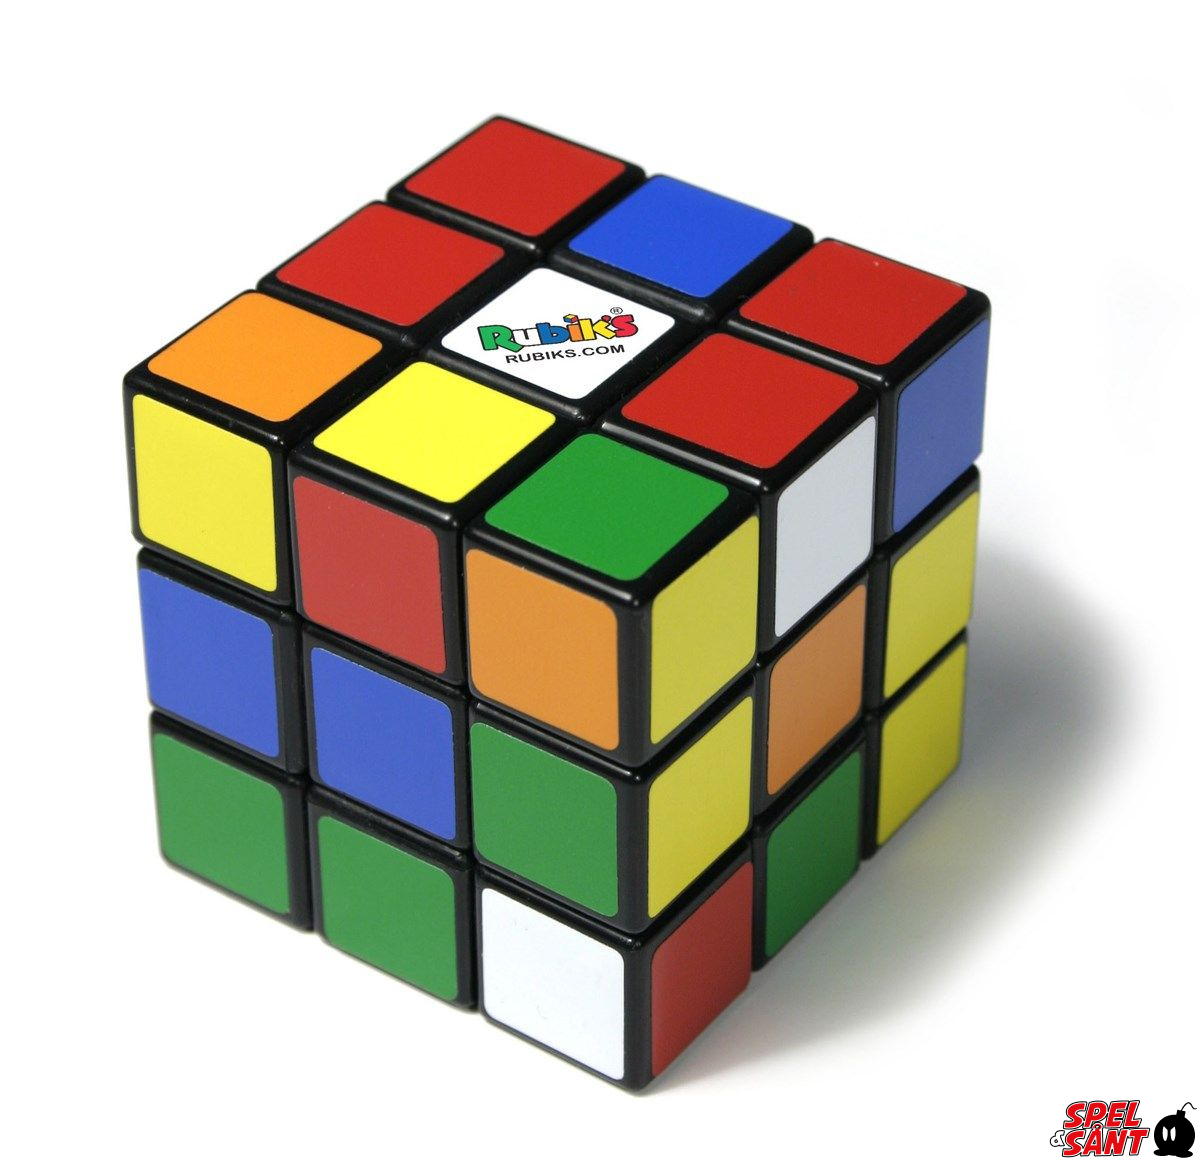 Rubiks Speedcube 3x3 - Spel & Sånt: TV-spelsbutiken med Sveriges